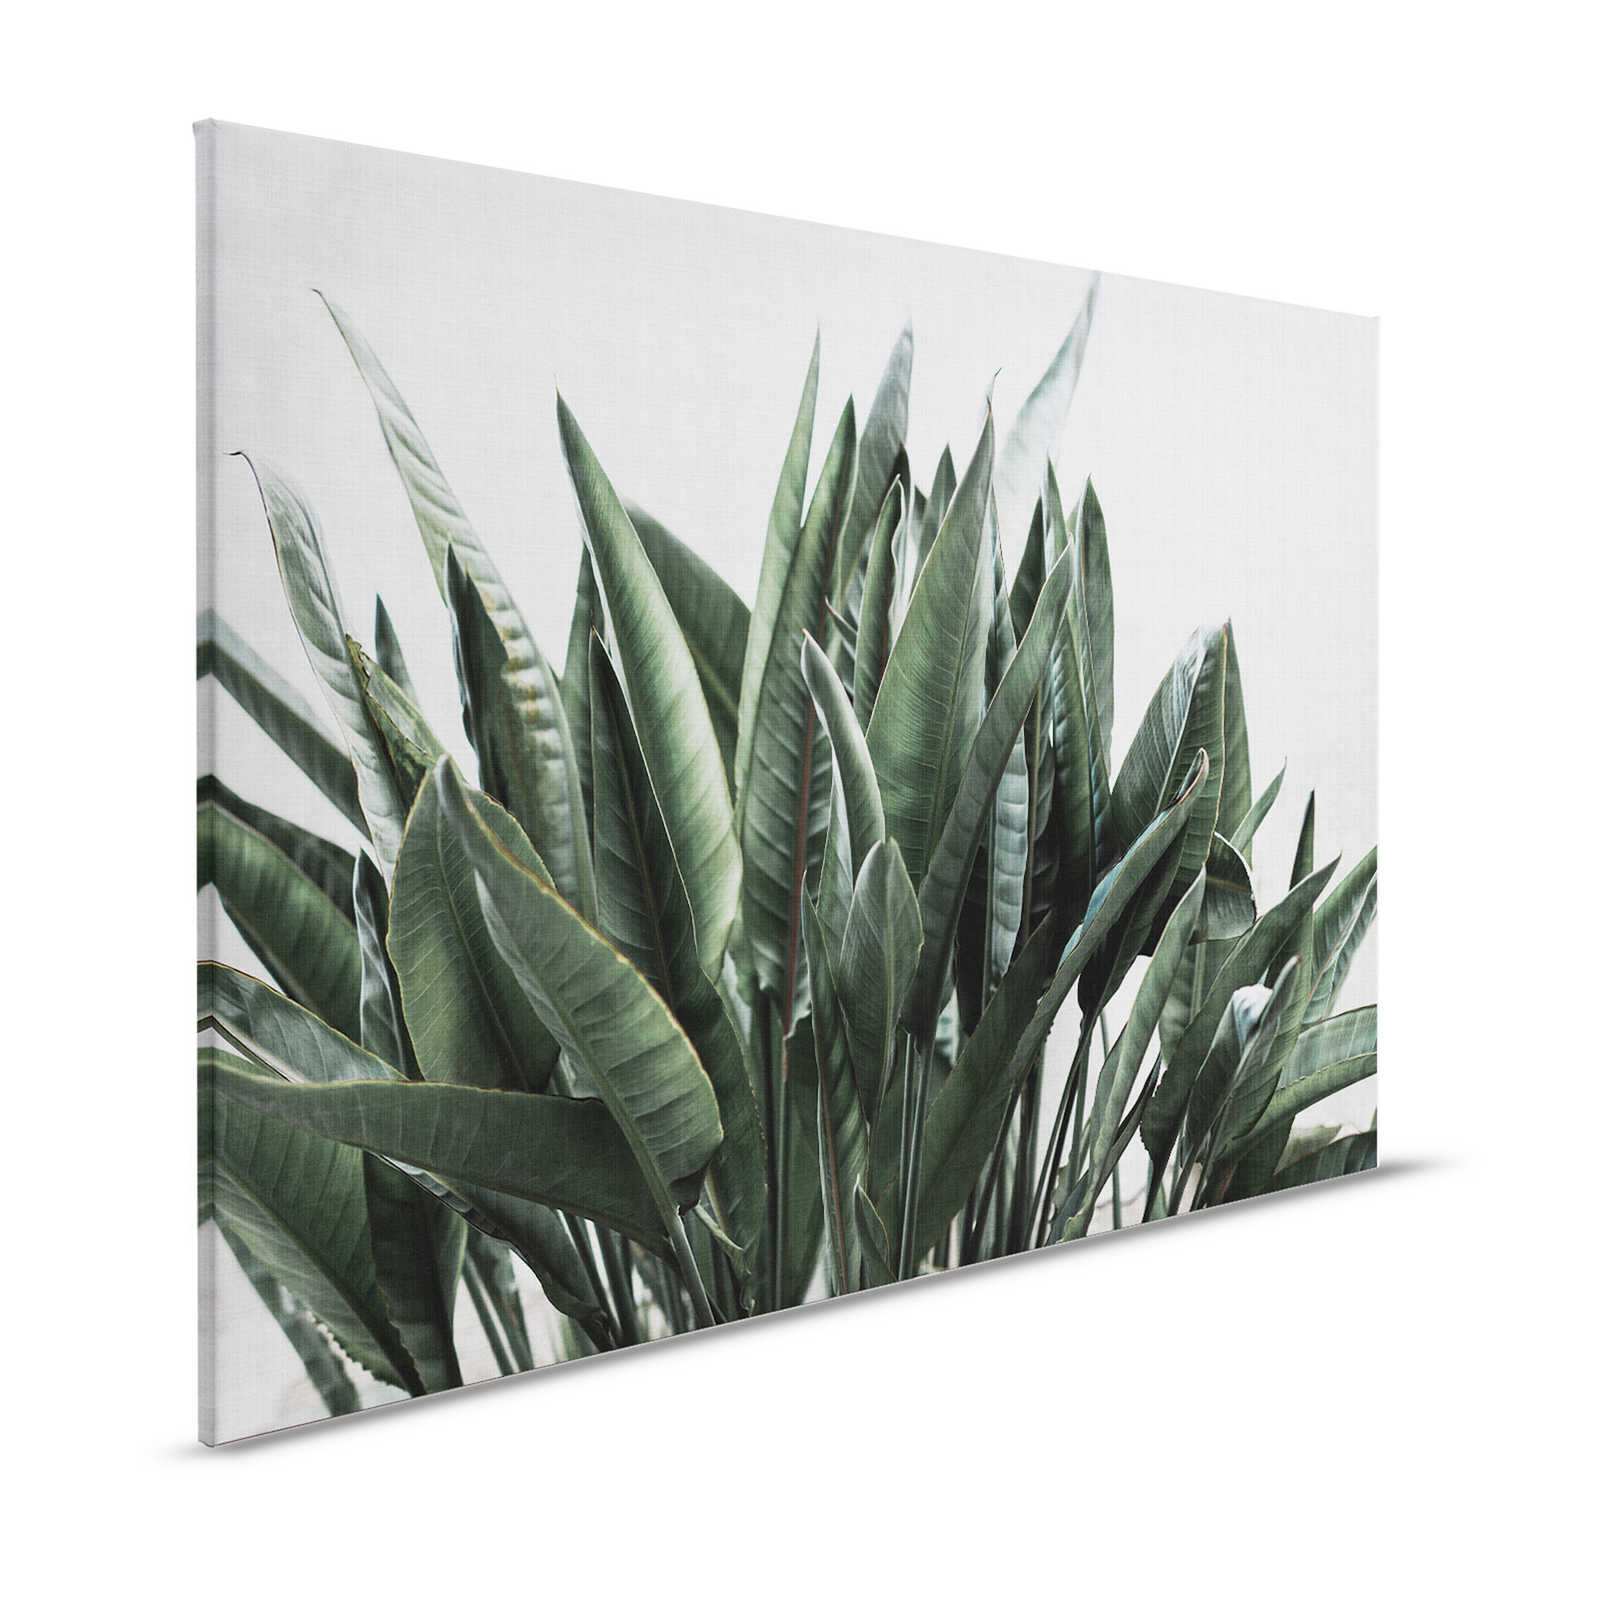 Jungla urbana 2 - Cuadro lienzo hojas de palmera, estructura lino natural plantas exóticas - 1,20 m x 0,80 m
